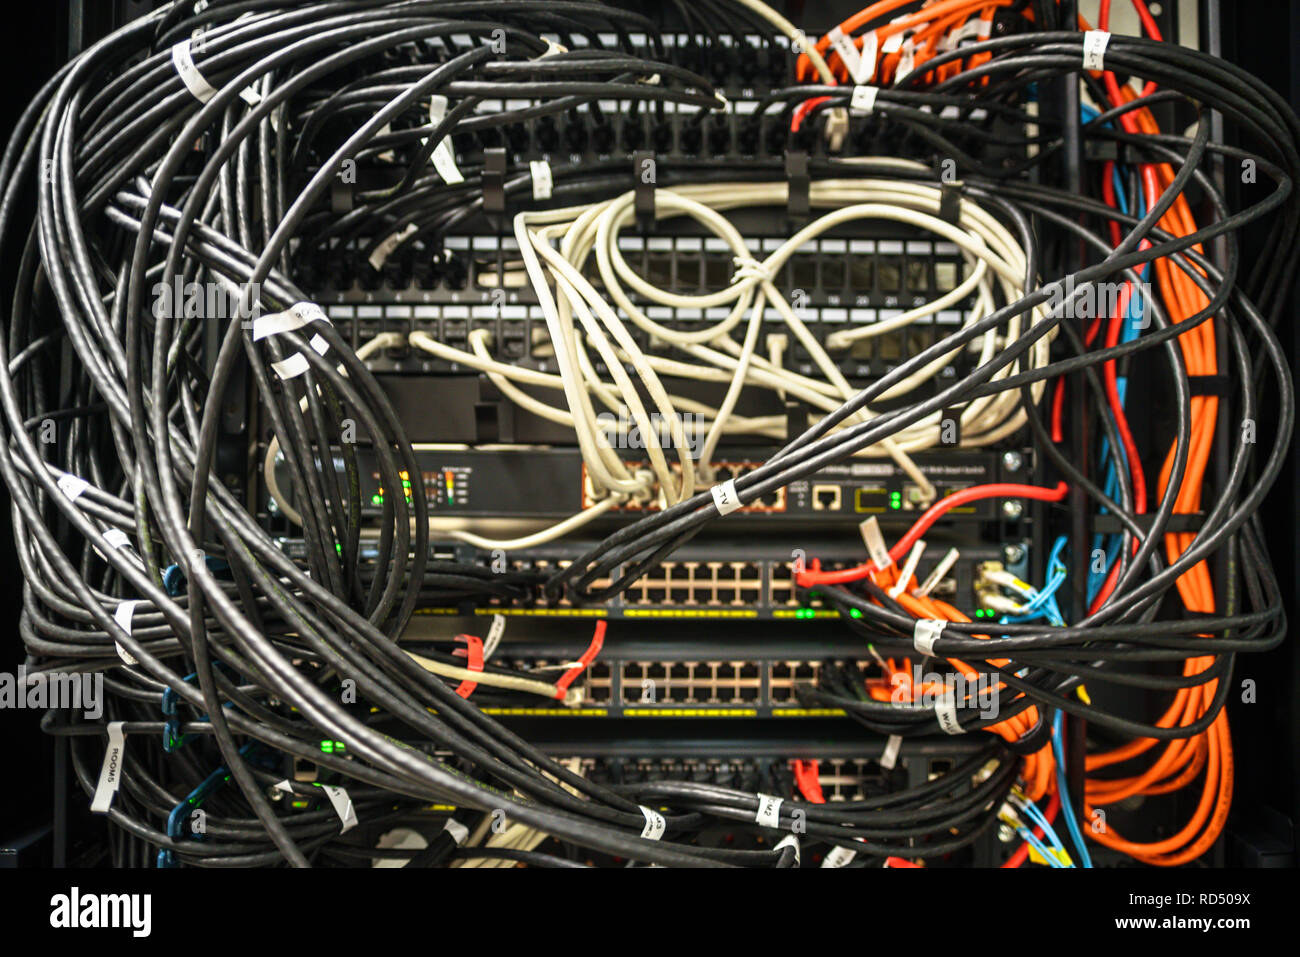 Netzwerk Hardware in ein Chaos. Etiketten mit Portnummern auf Drähte Stockfoto